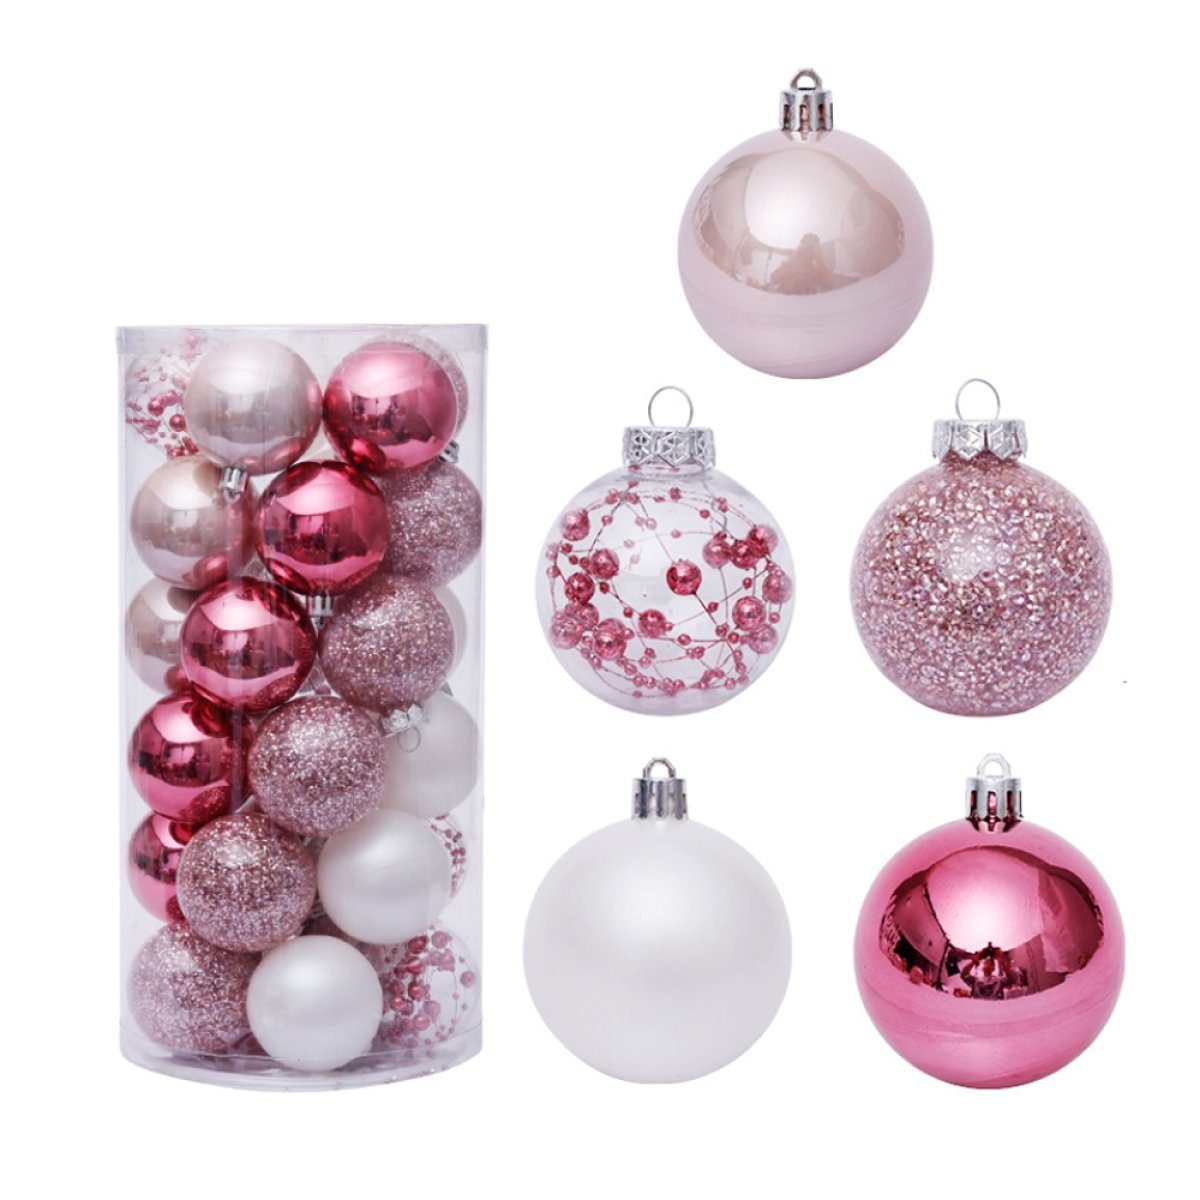 Zeaicos Christbaumschmuck Weihnachtskugel-Ornamente, Weihnachtsbaumkugeln für Urlaub, Party